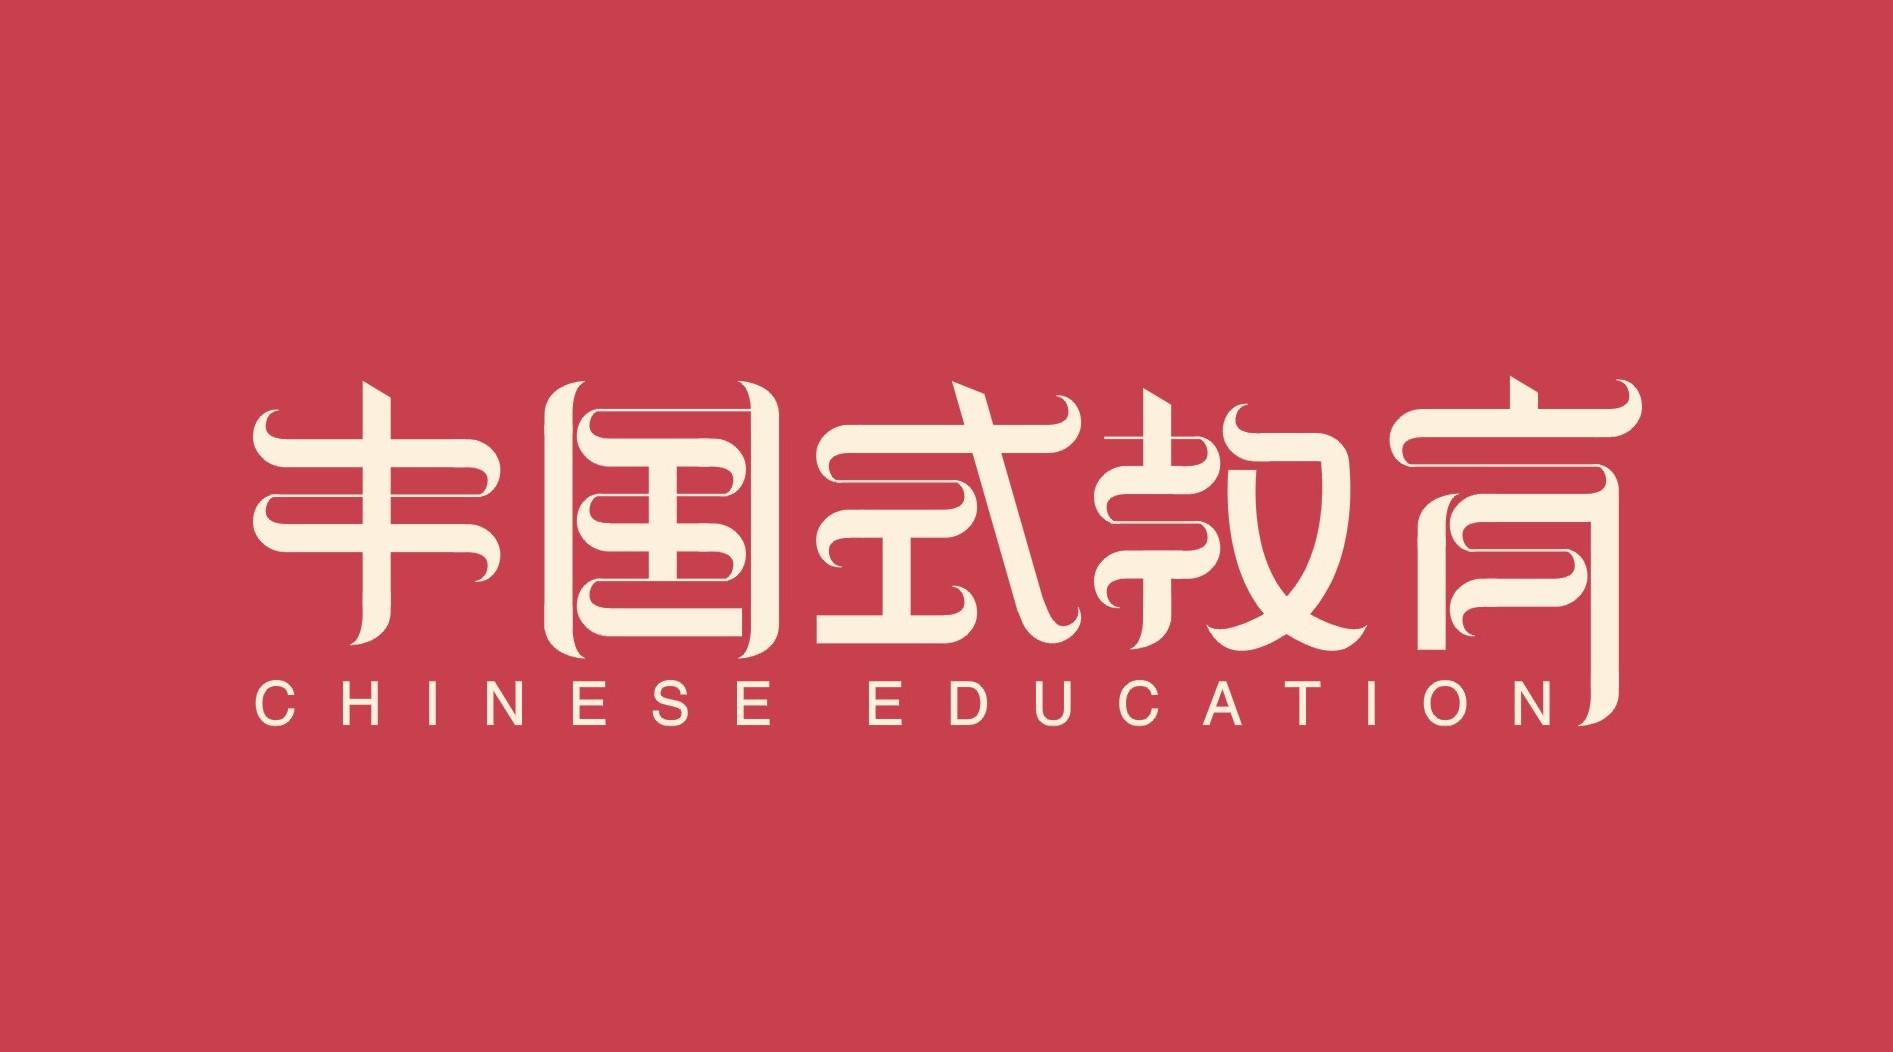 中国式教育（6分钟解析中国教育现状）